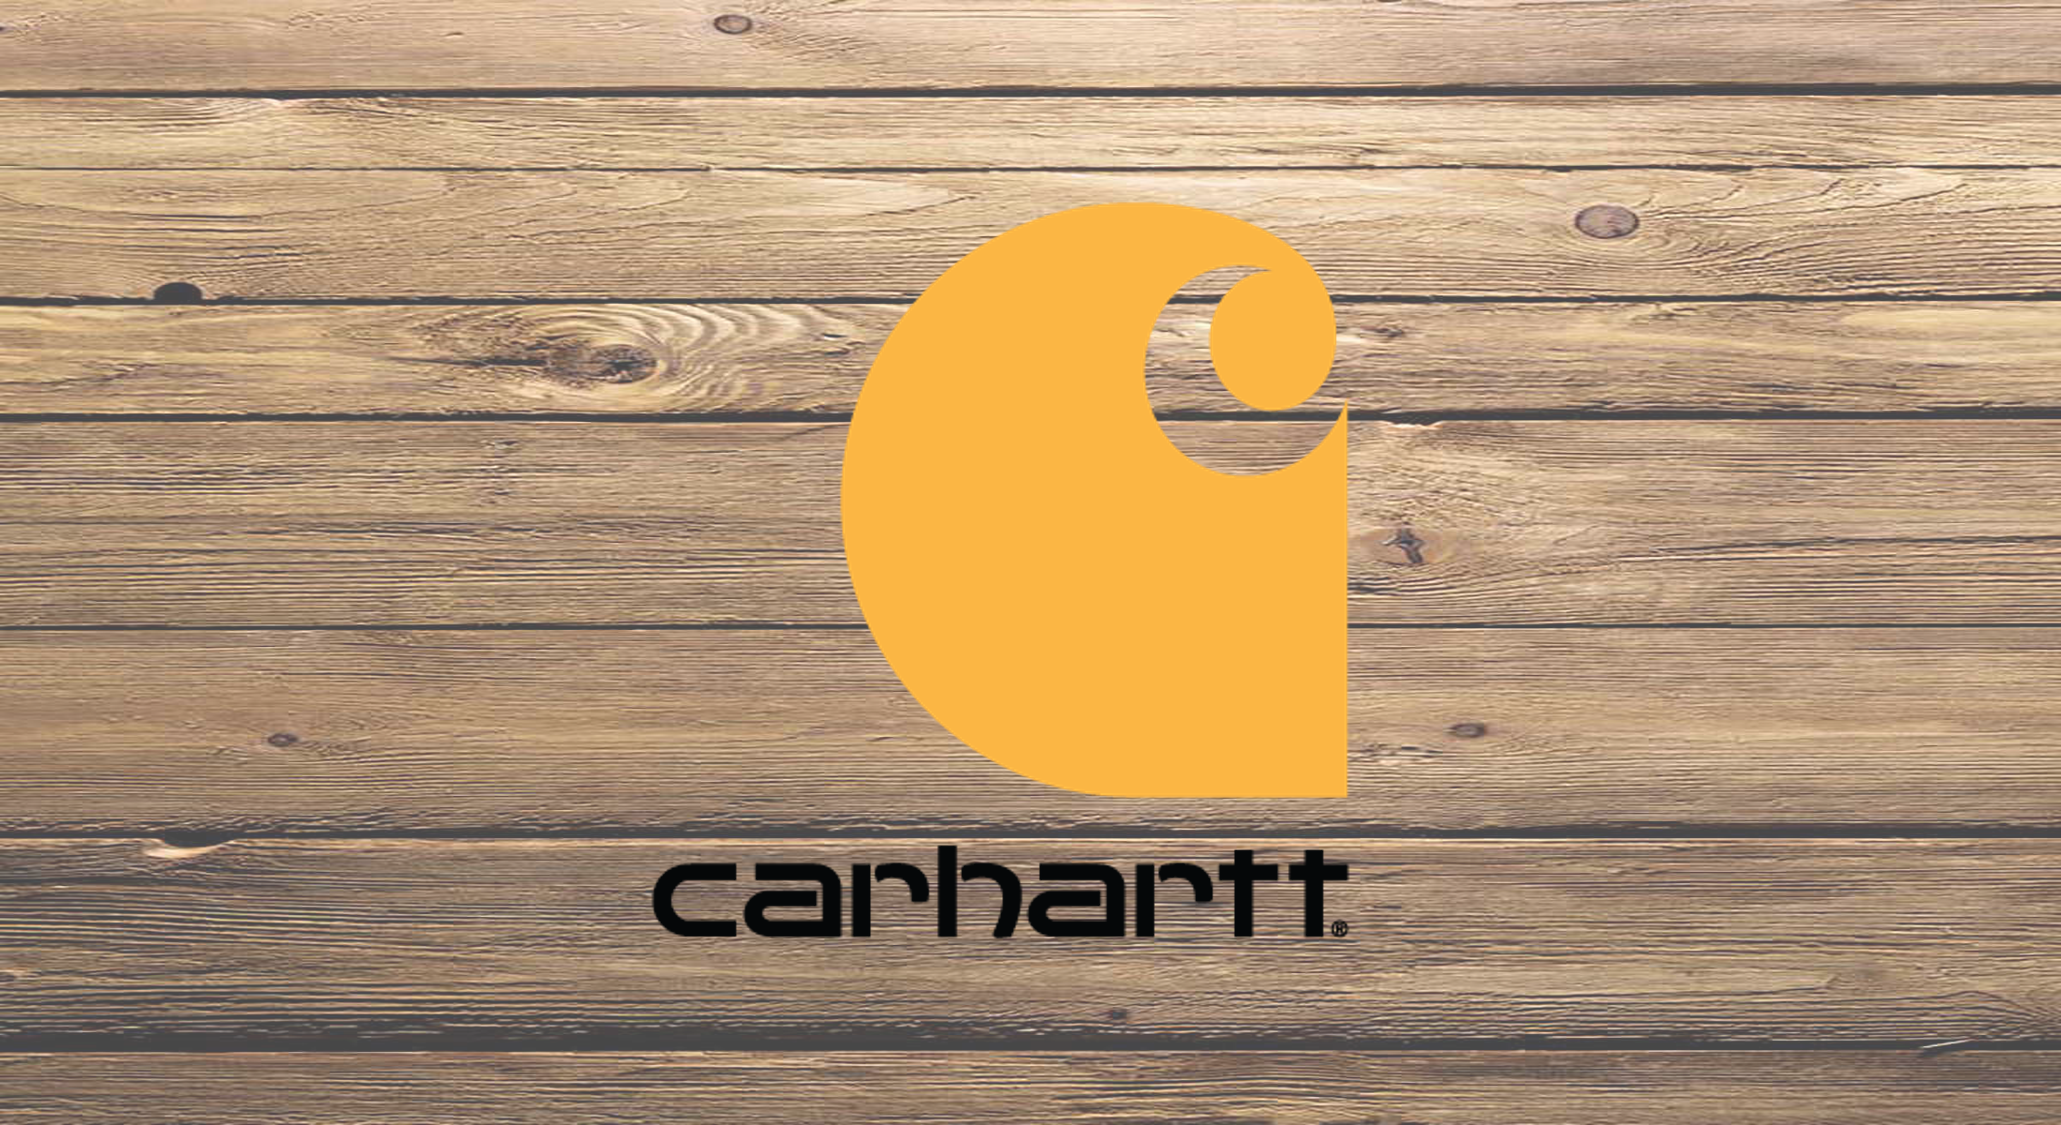 Carhartt Boots Demonstration Video